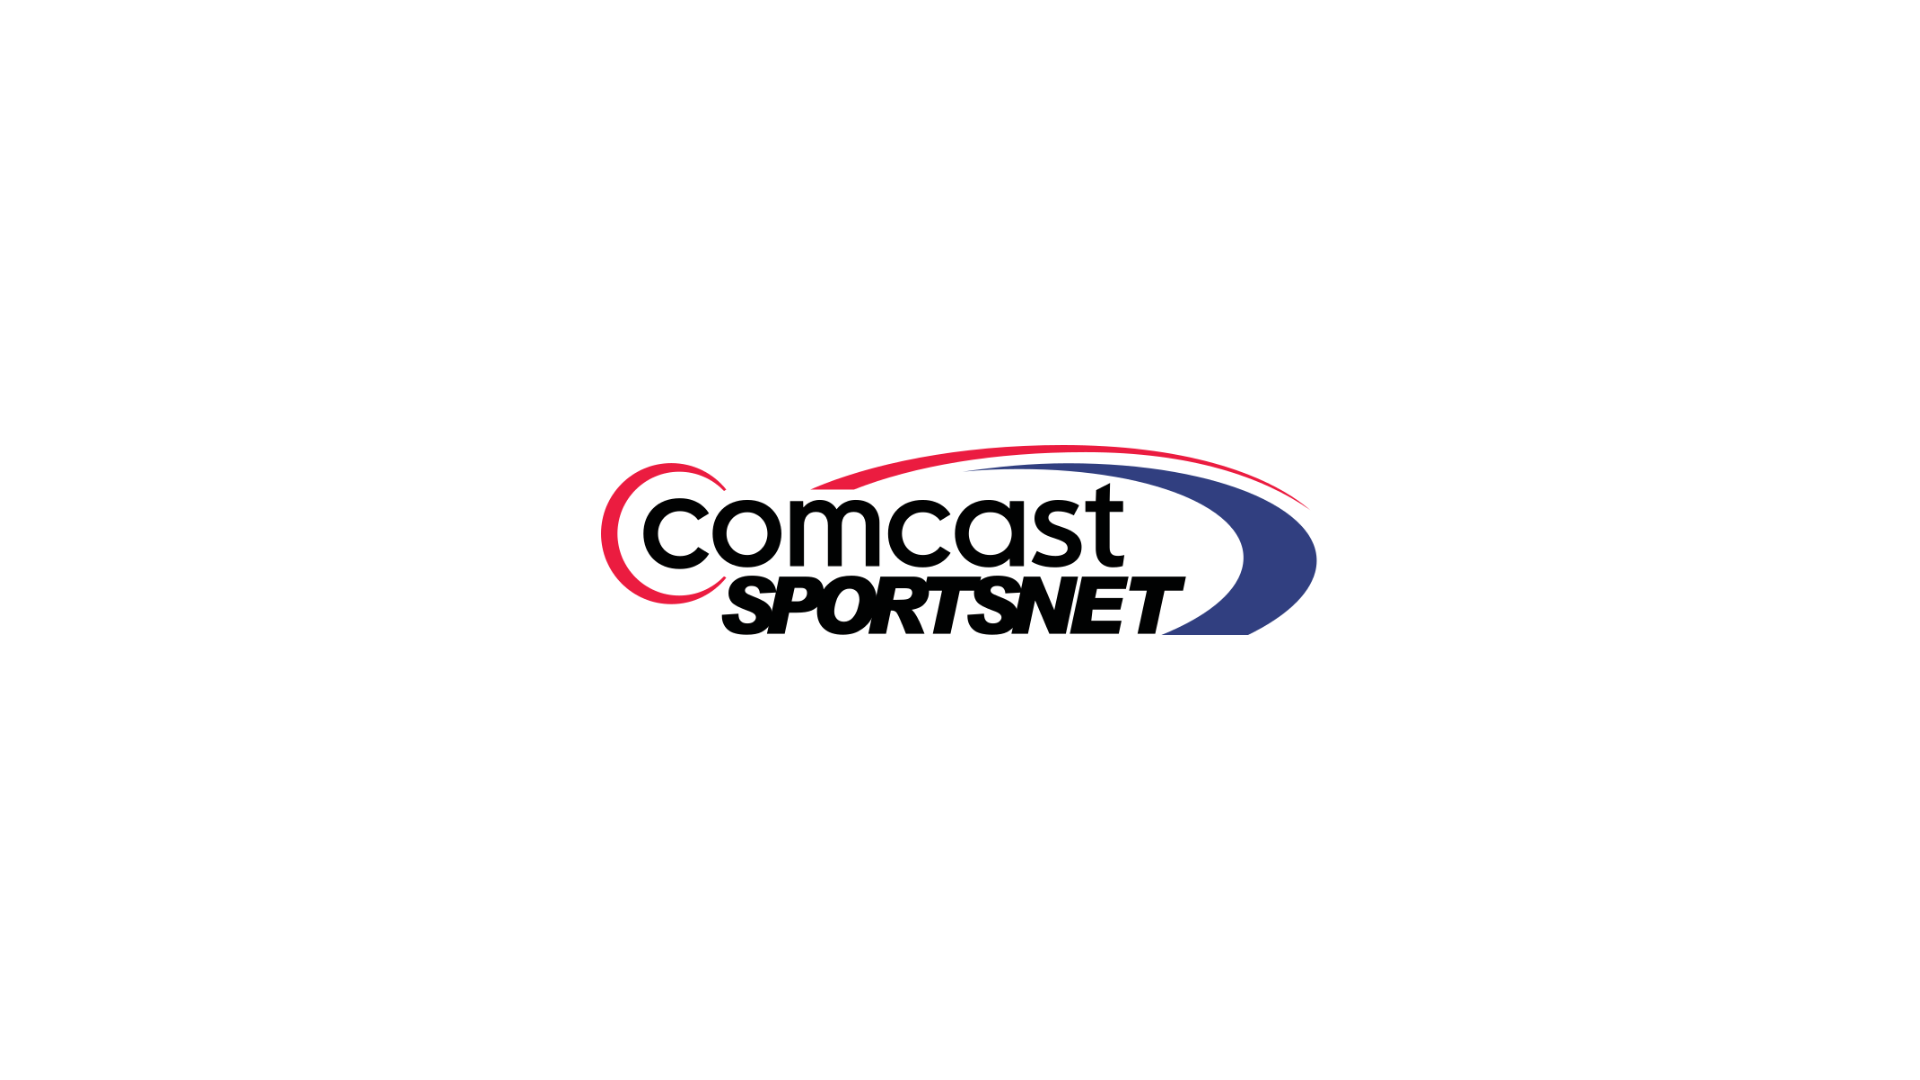 Comcast logo.png